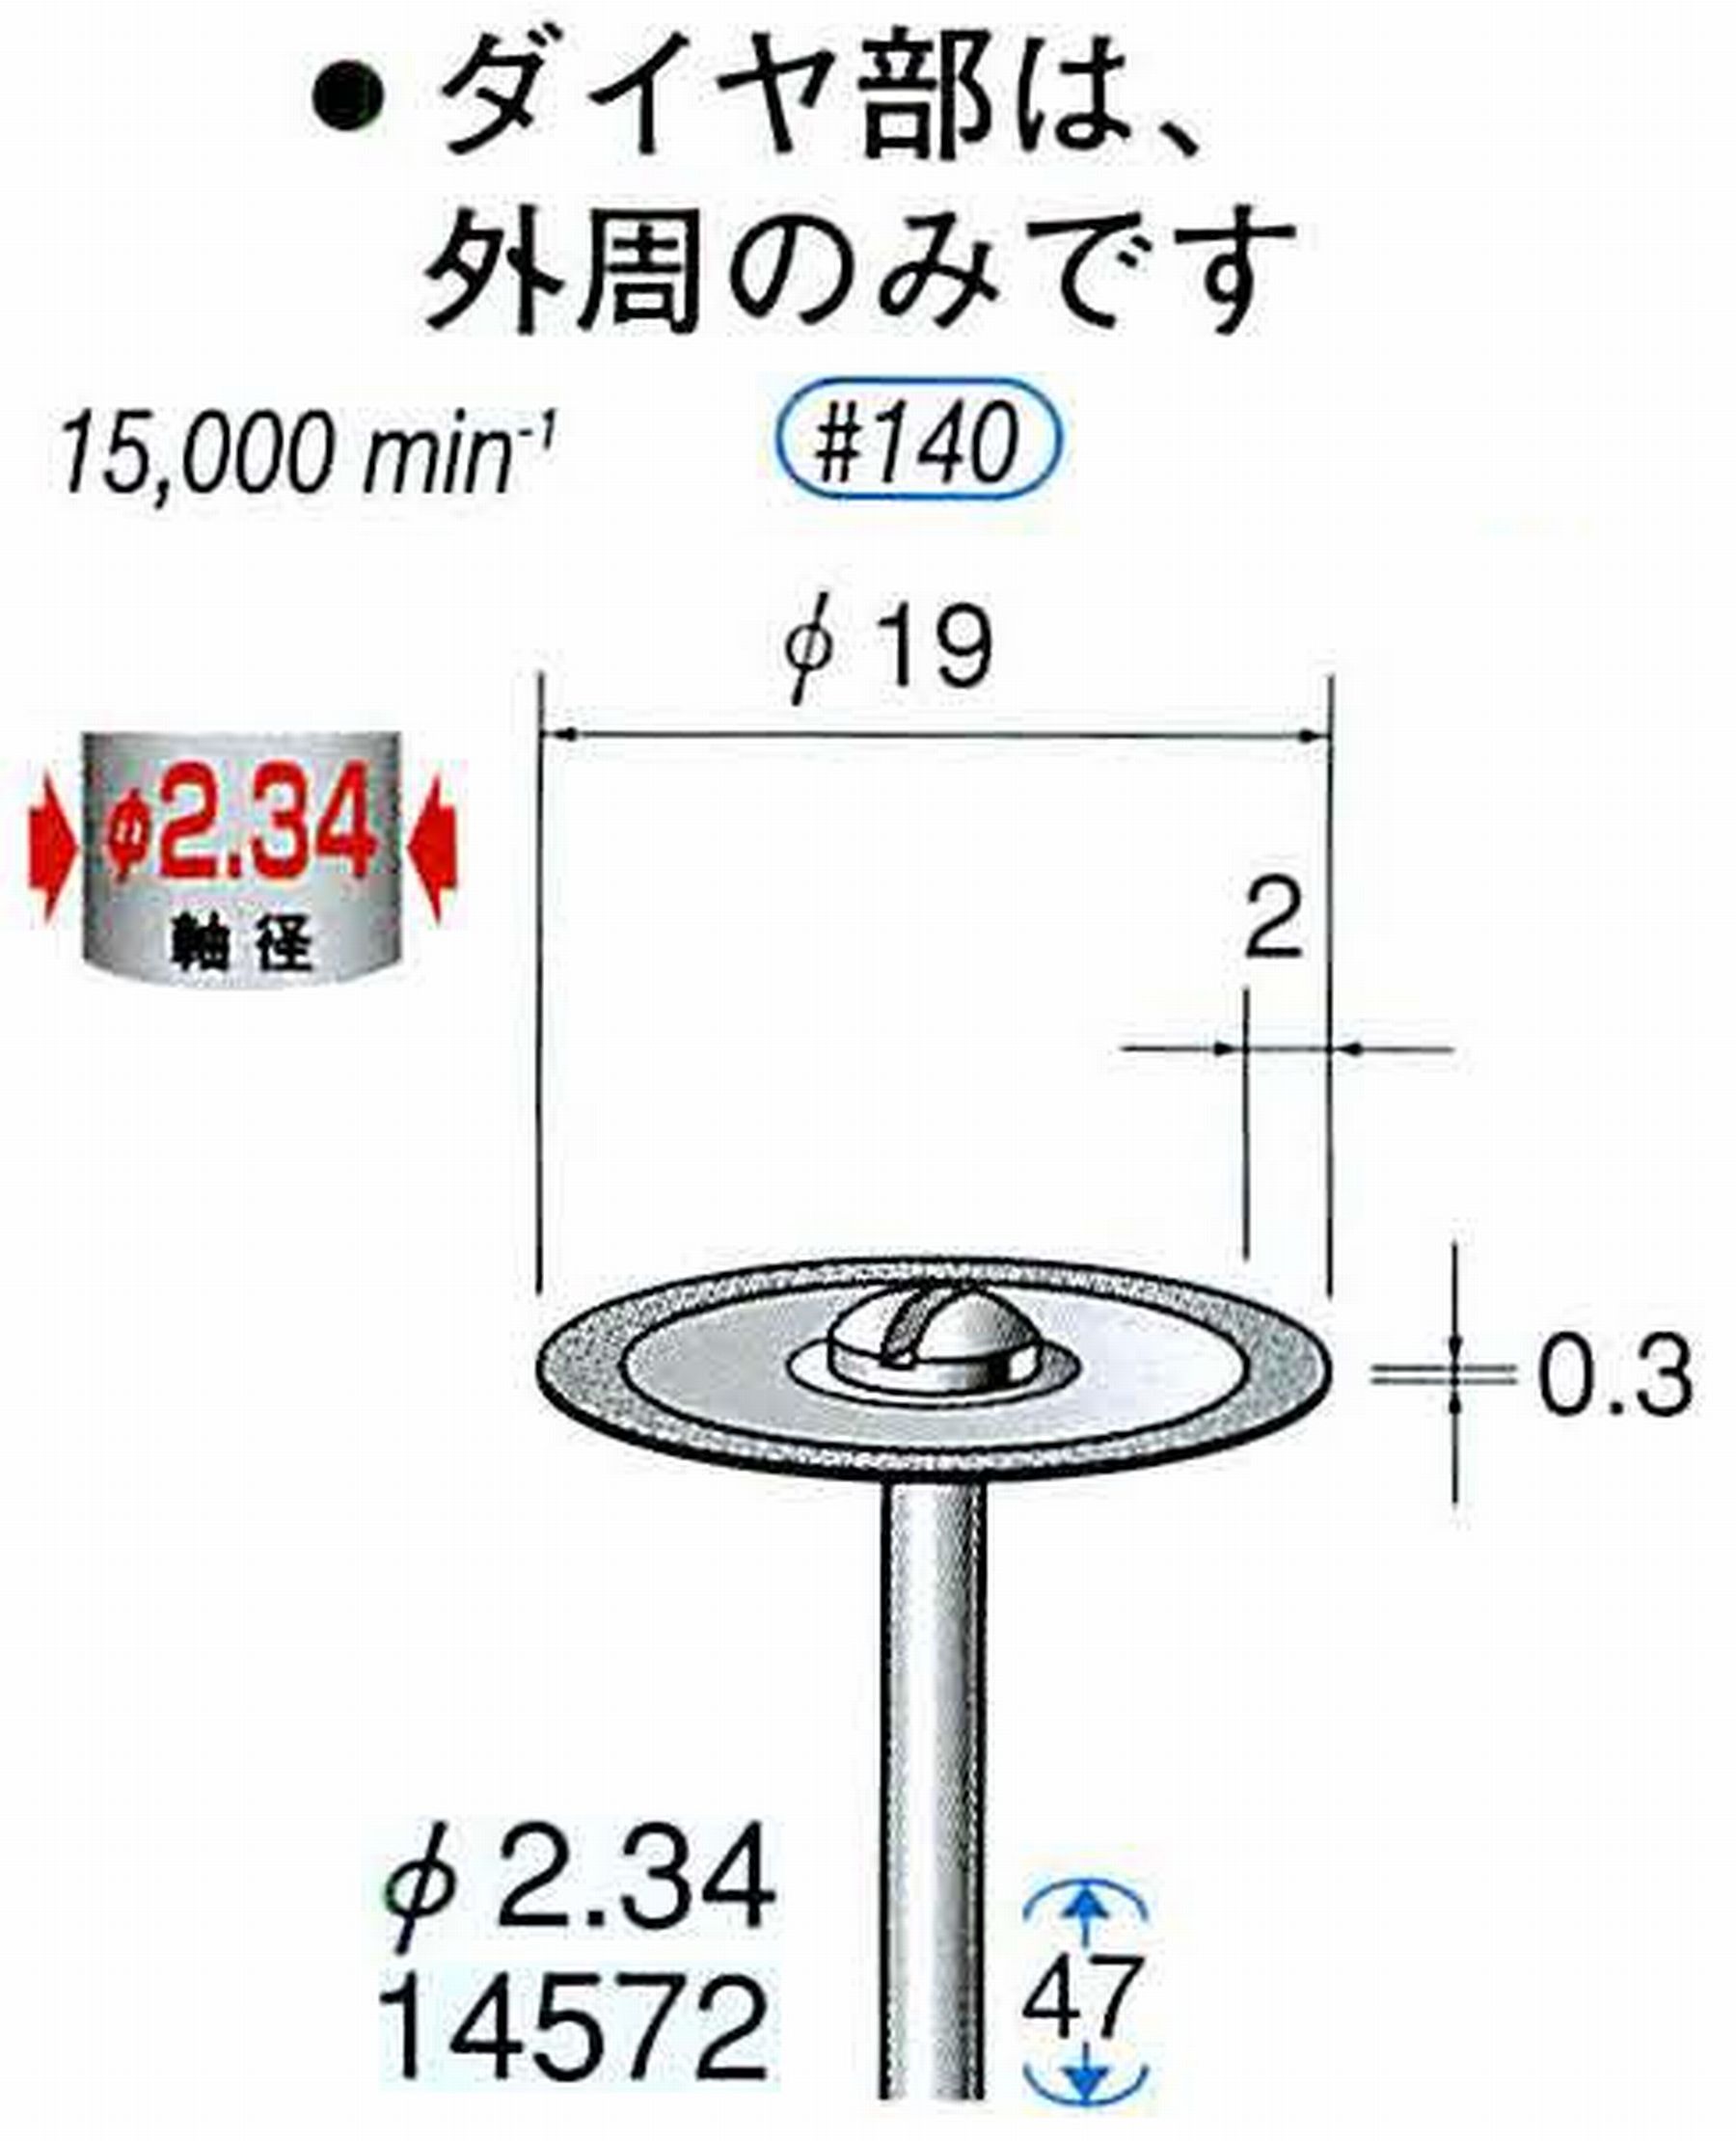 ナカニシ/NAKANISHI ダイヤモンドカッティングディスク メタルボンドタイプ 軸径(シャンク)φ2.34mm 14572